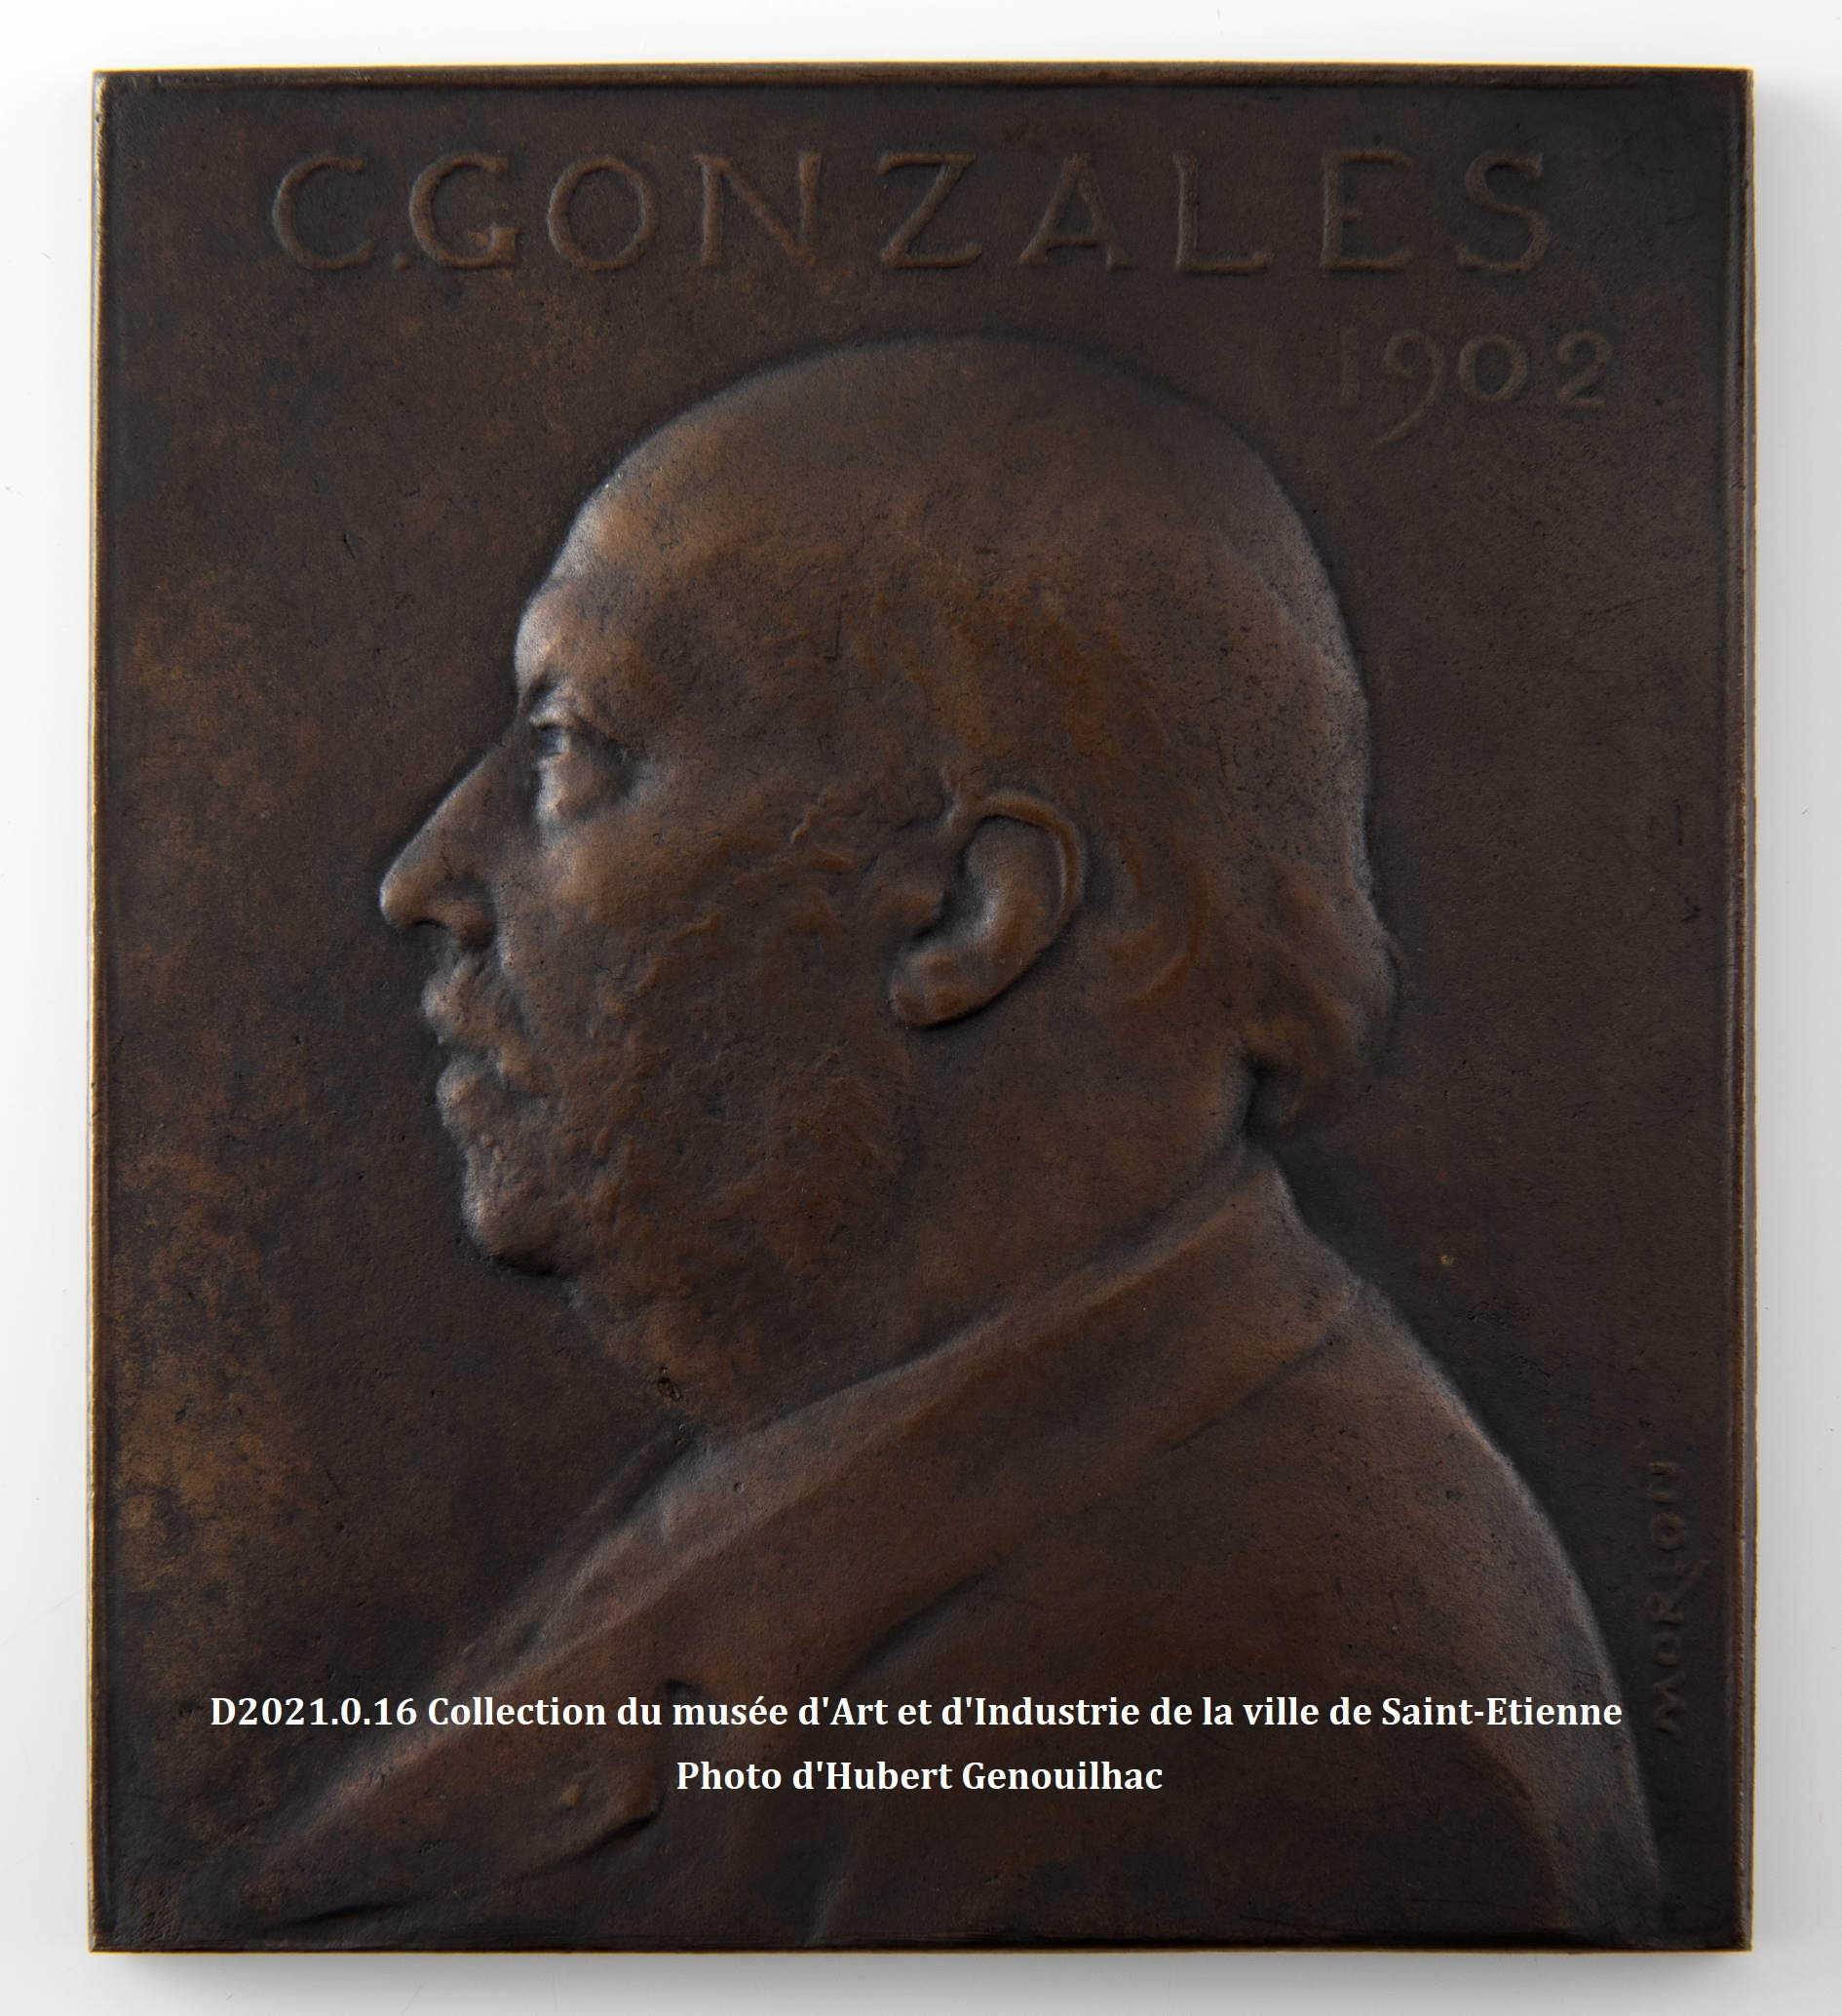 C. Gonzales 1902 : Le début de la carrière de médailleur d’Alexandre Morlon